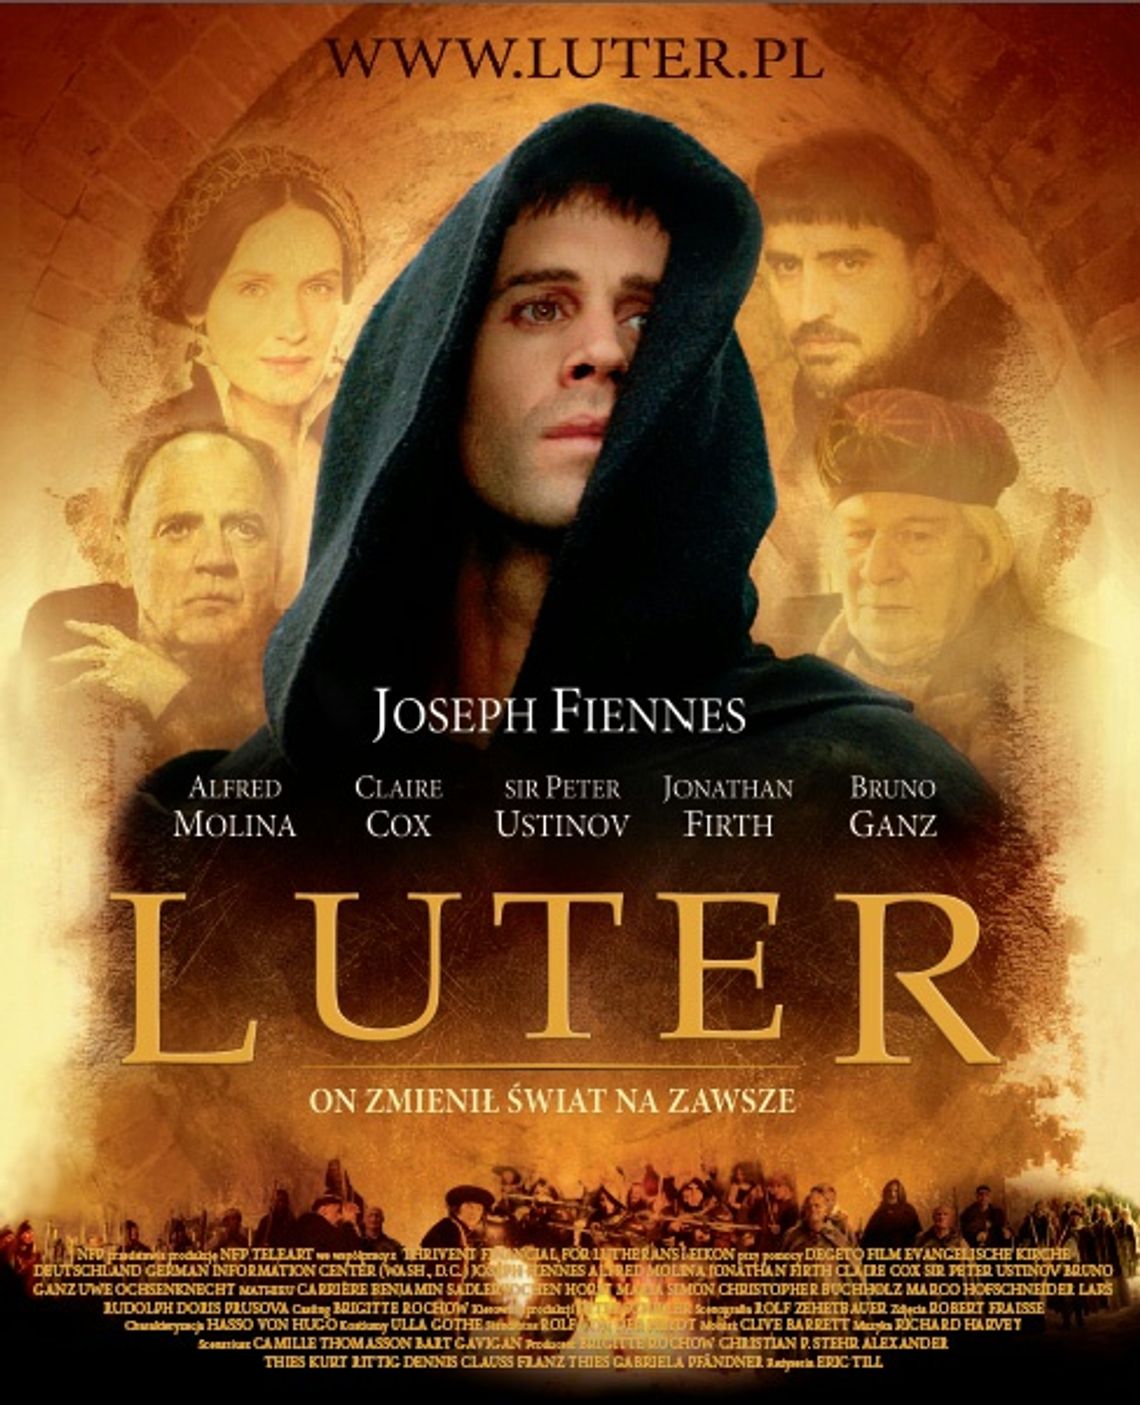 Projekcja filmu "Luter"